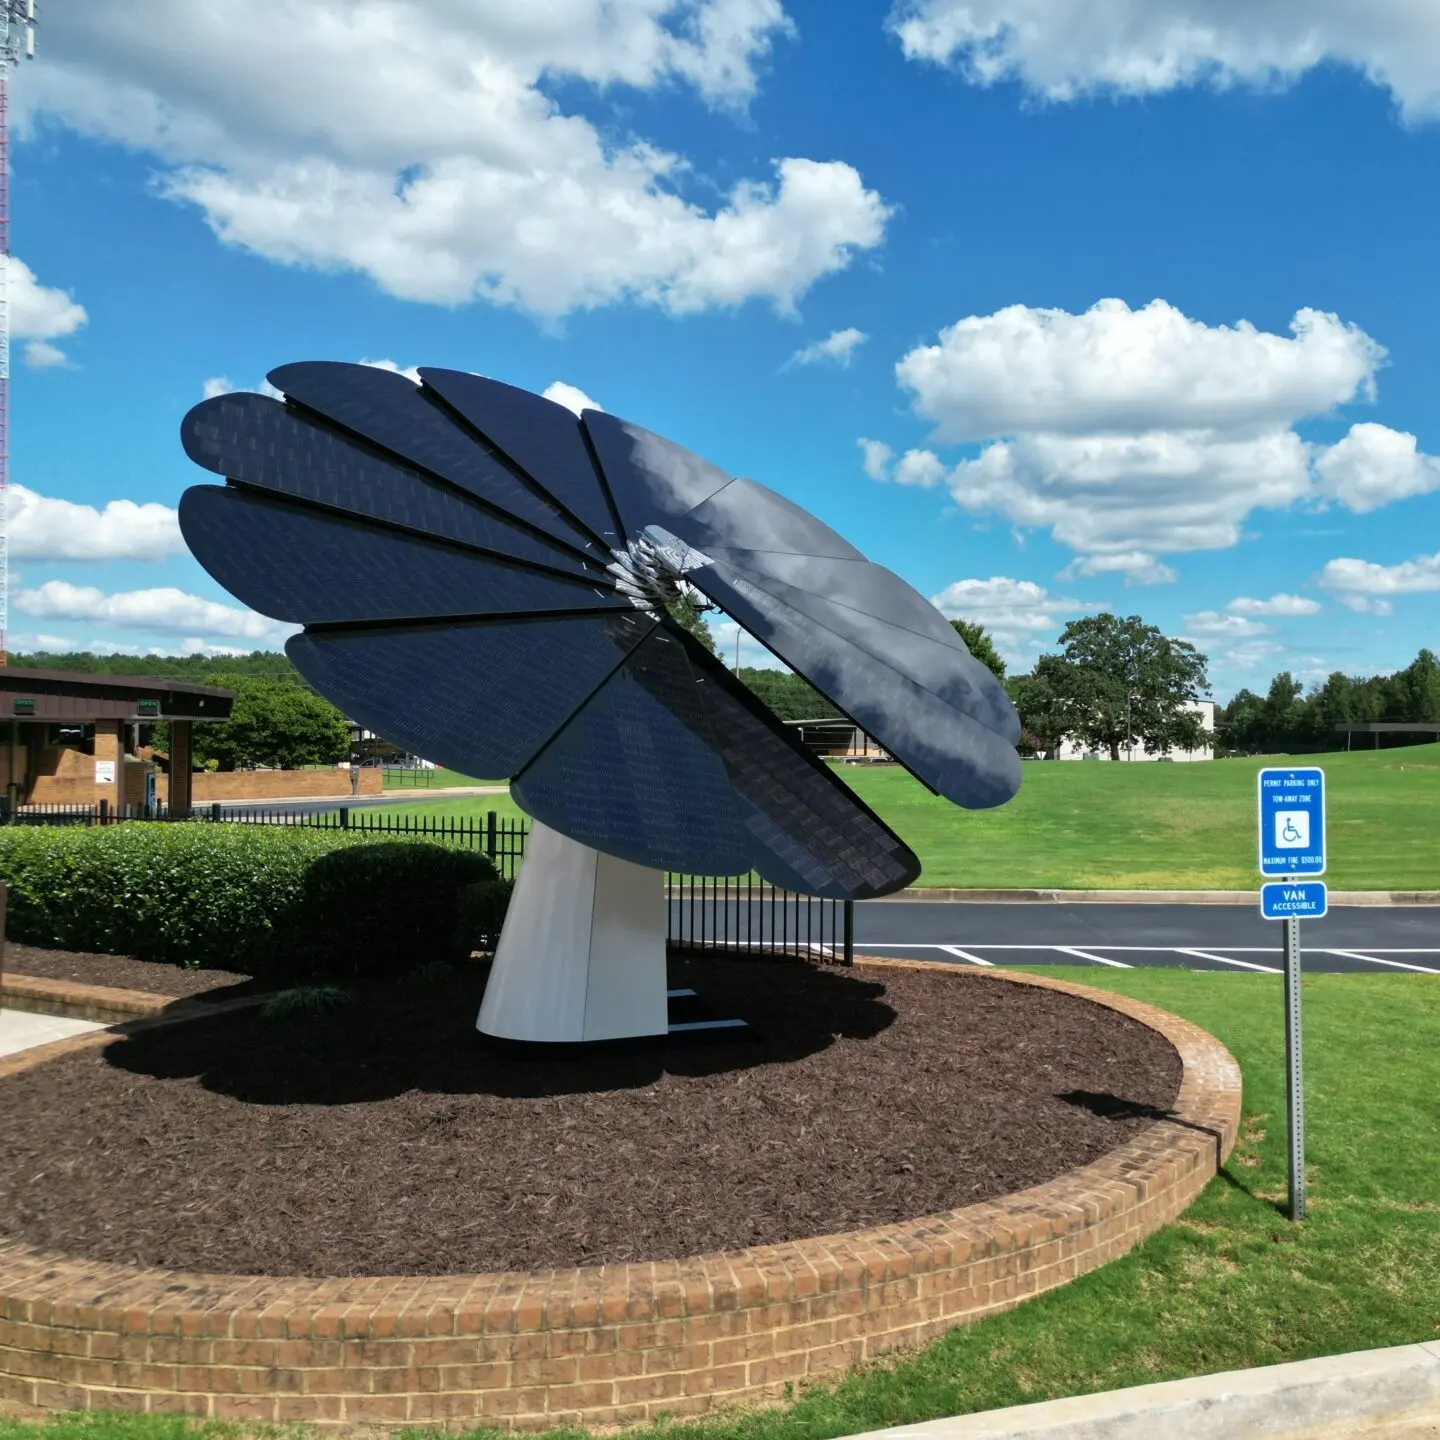 Panel surya bunga matahari rumah kualitas tinggi, modul pv untuk sistem tenaga surya pintar fotovoltaik 1kw 2,6kw kit